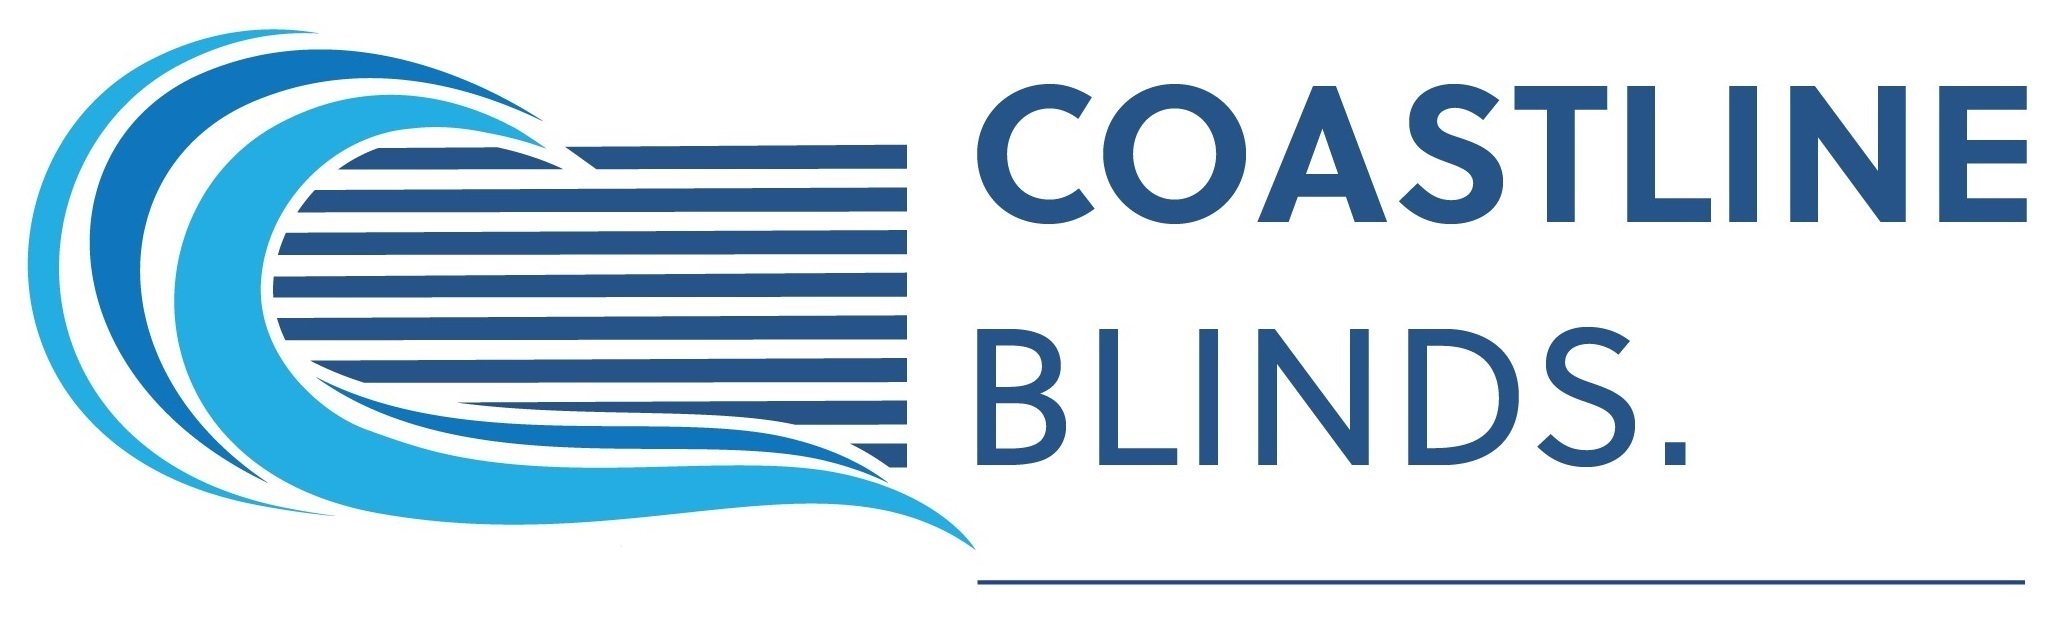 Coastline Blinds